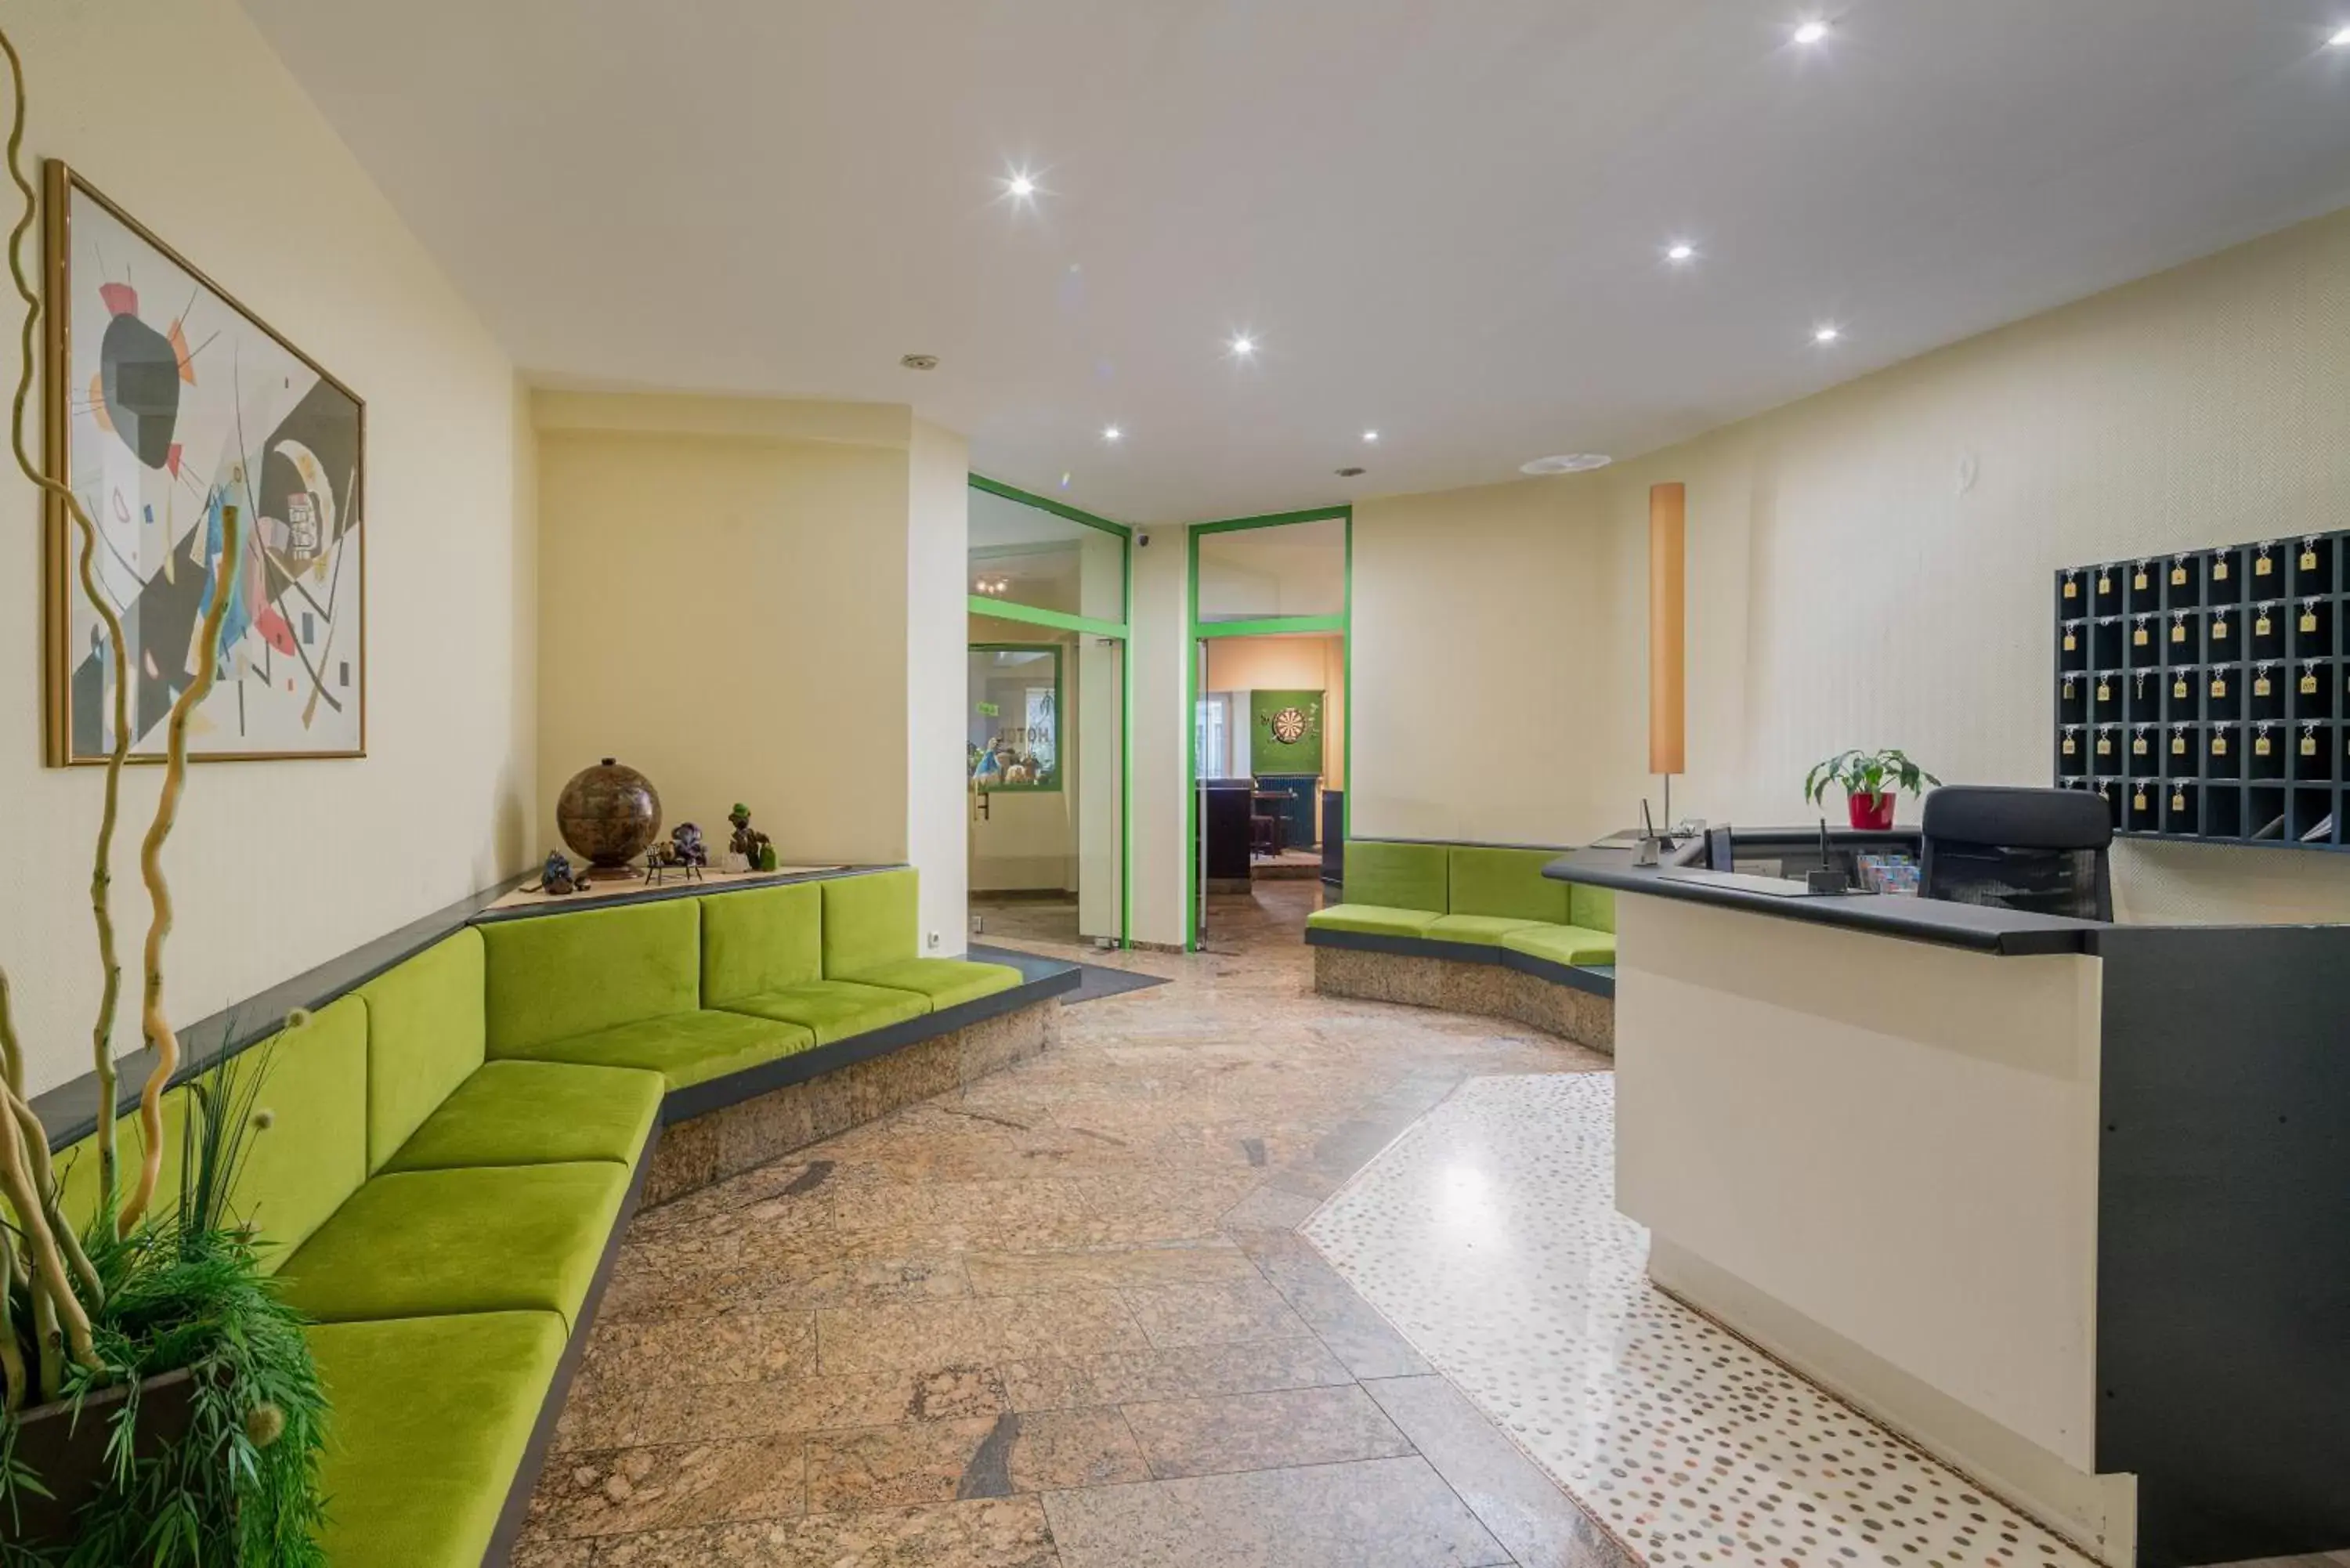 Lobby or reception, Lobby/Reception in Hotel Fidelio